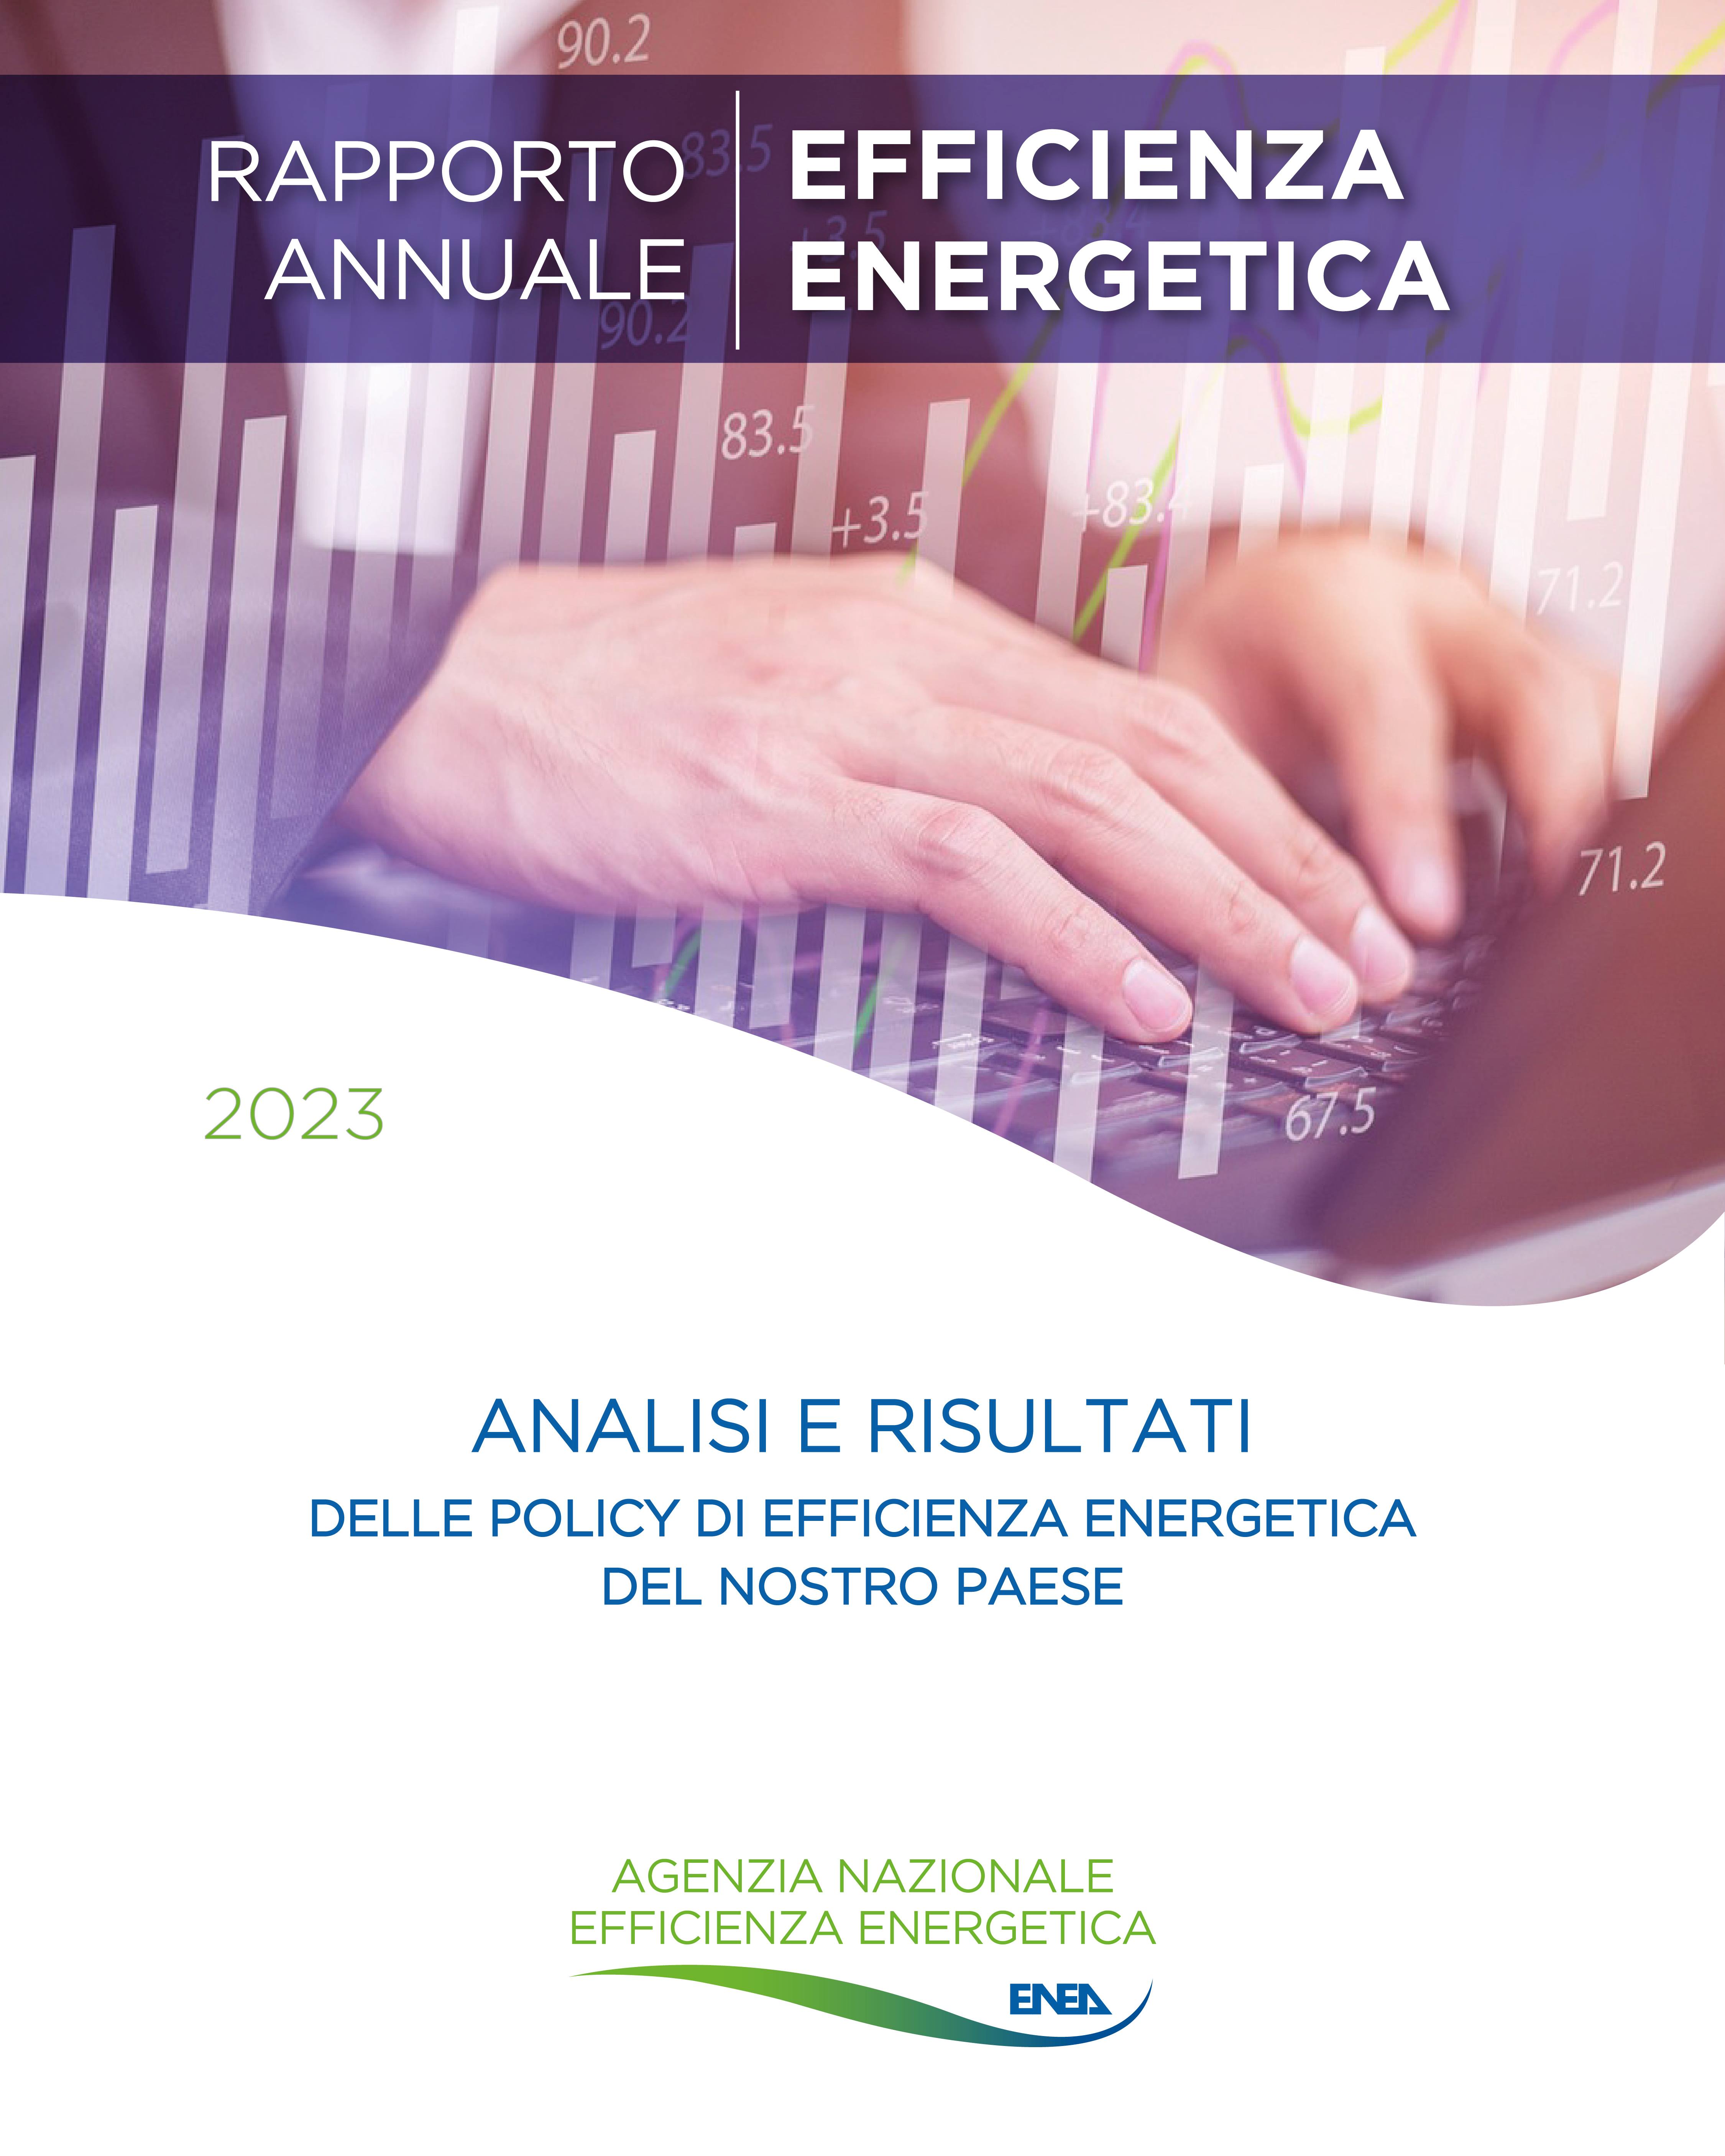 La copertina del Rapporto Annuale sull’Efficienza Energetica dell’ENEA 2023 con il logo di ENEA - Agenzia Nazionale per l'Efficienza Energetica in verde su sfondo bianco